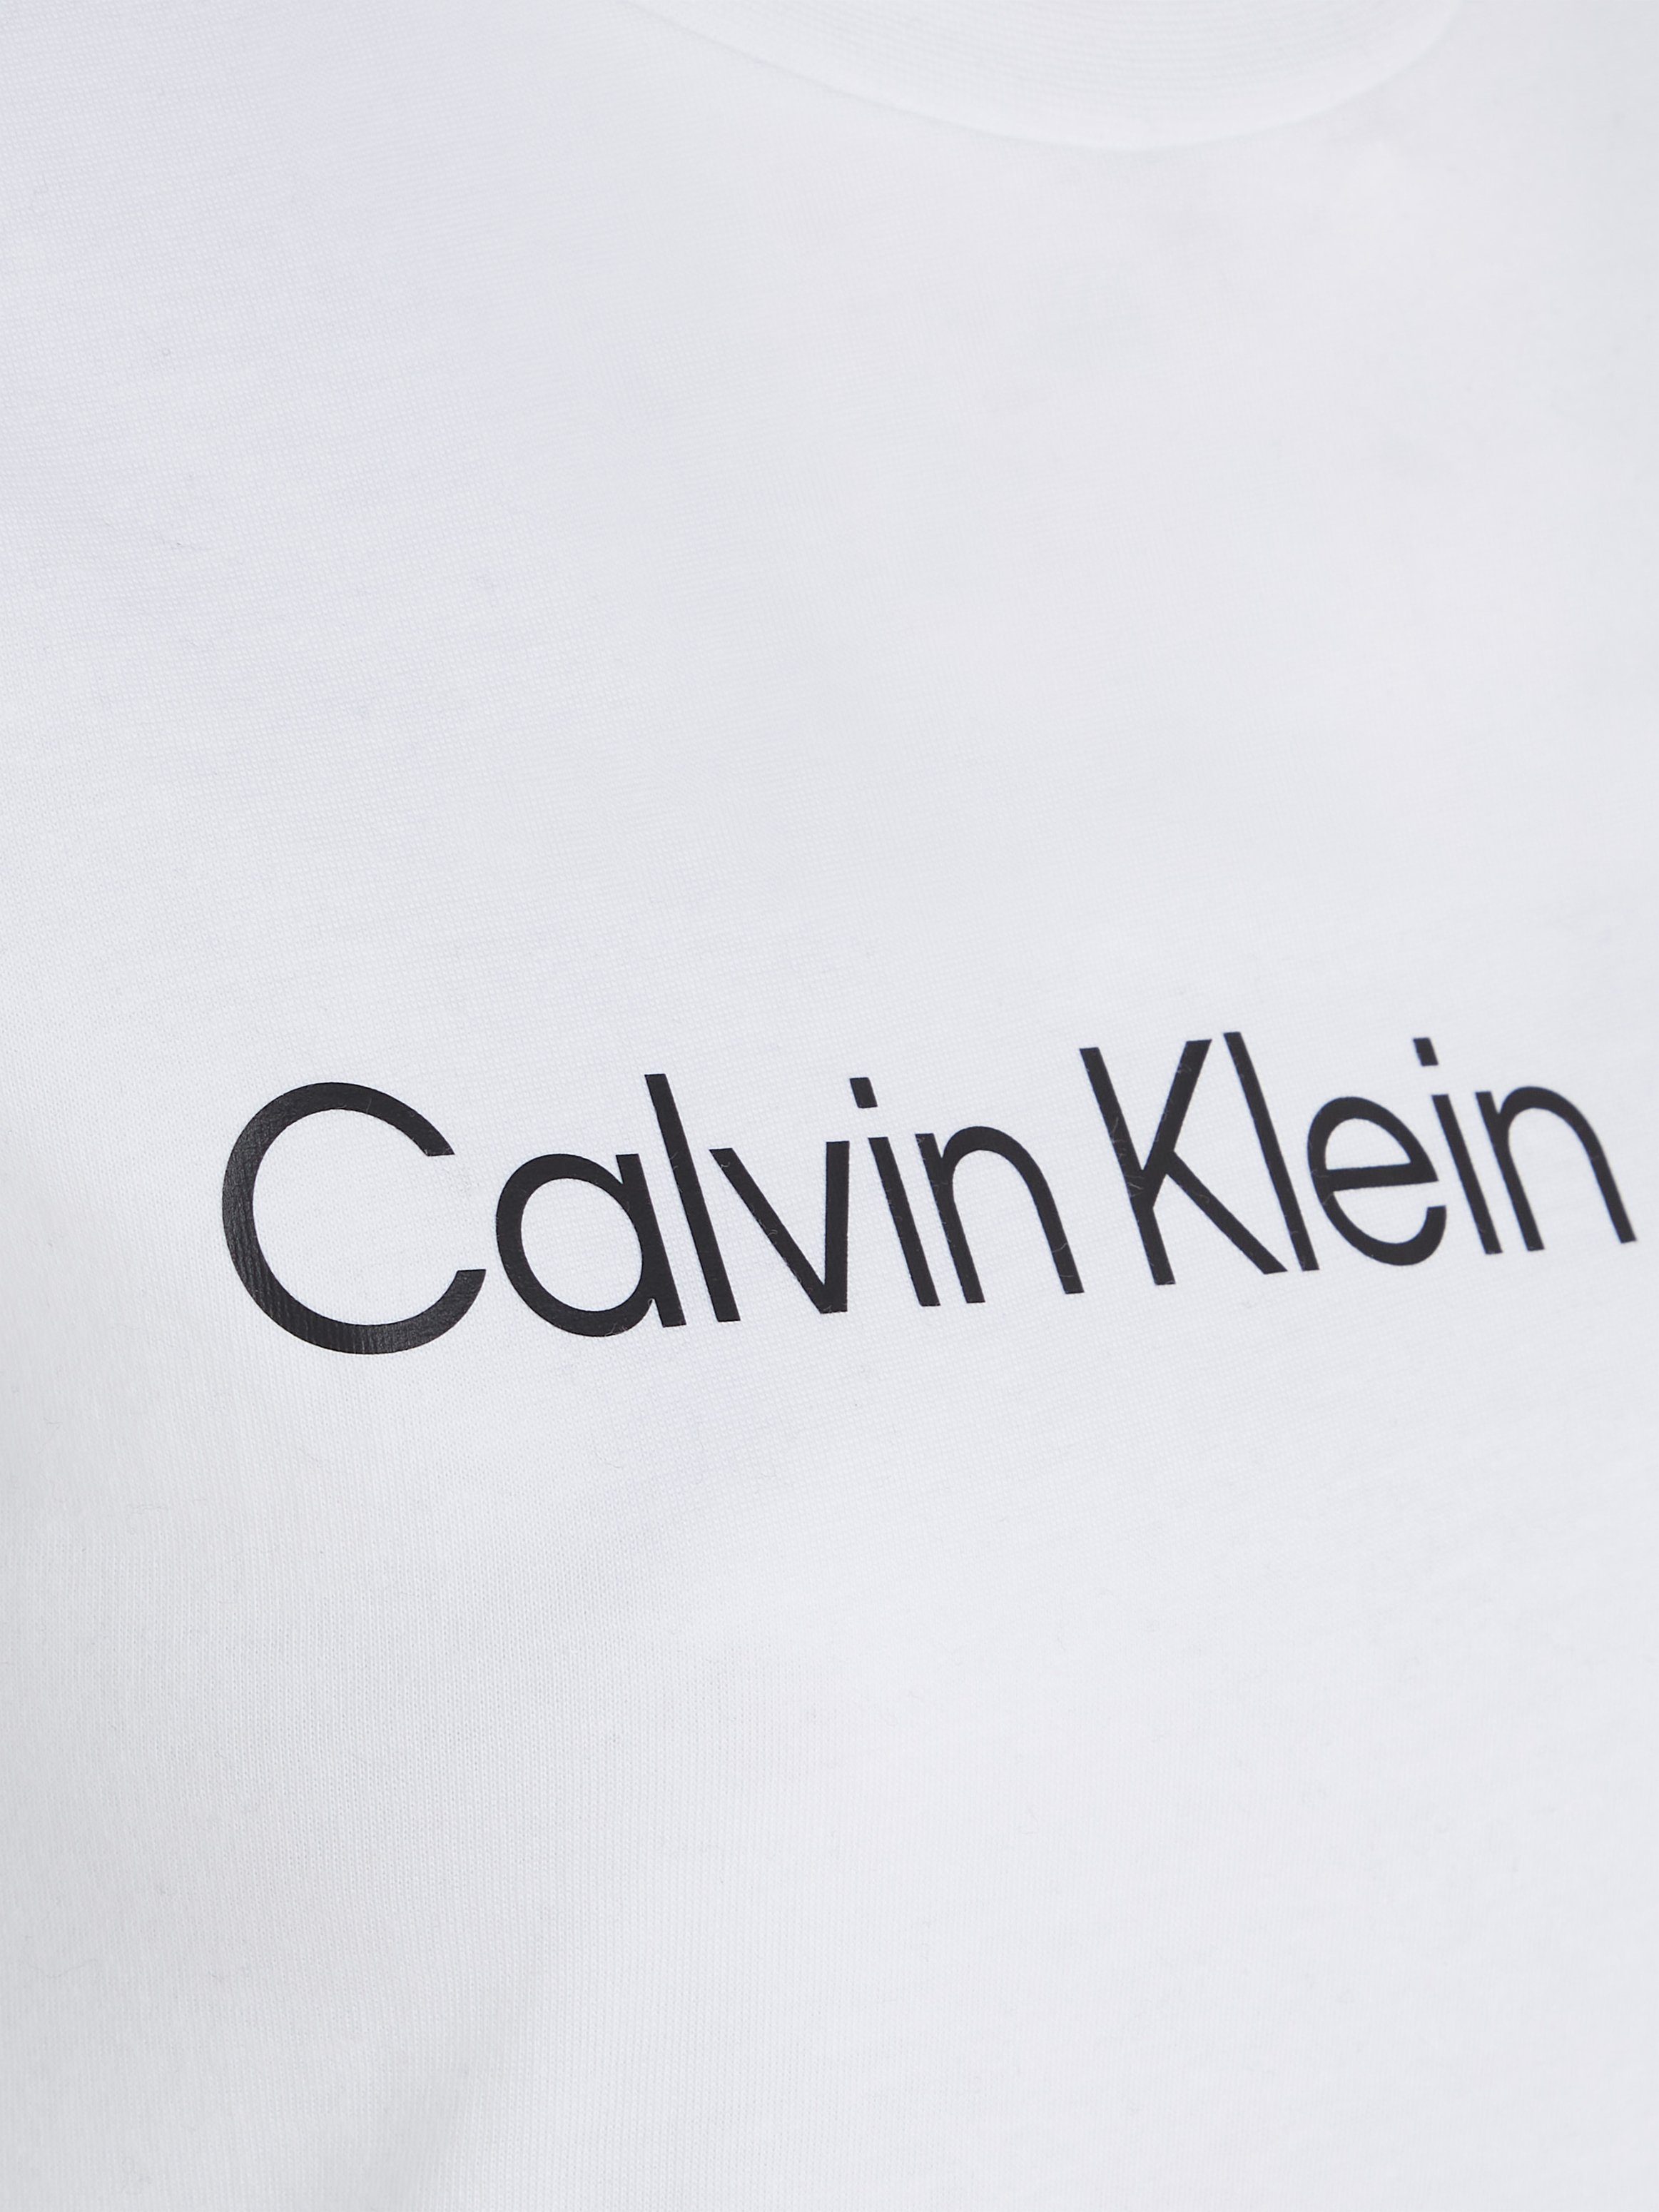 CK-Logoschriftzug TEE SLIM mit FIT Bright T-Shirt White Jeans INSTIT Klein Calvin LOGO CORE